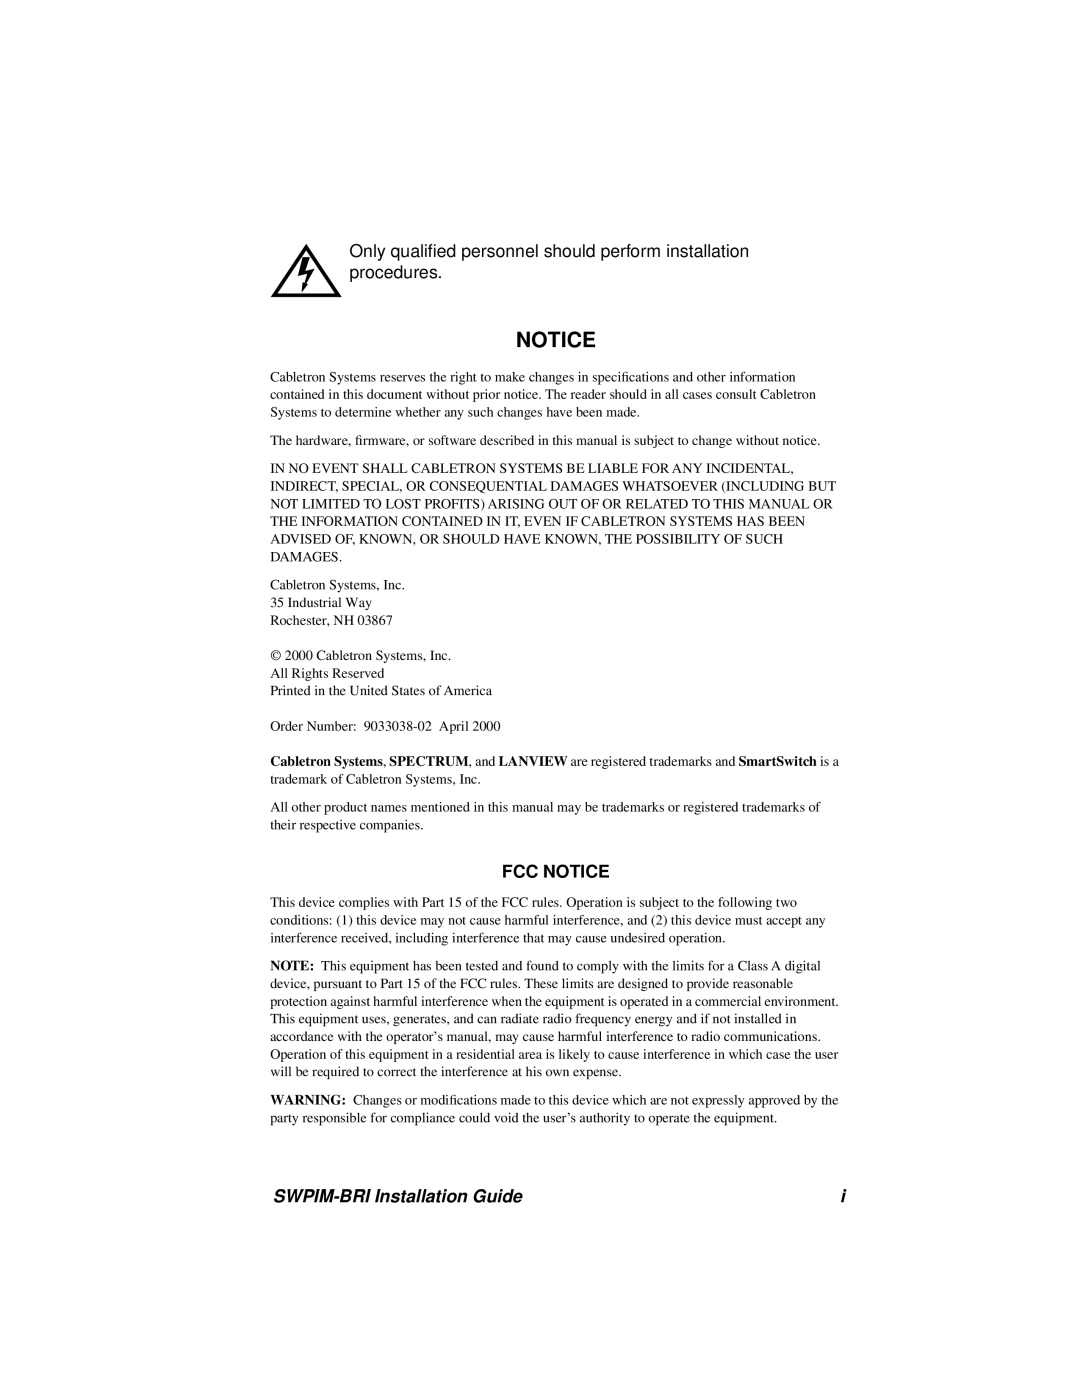 Cabletron Systems manual Fcc Notice, SWPIM-BRI Installation Guide 